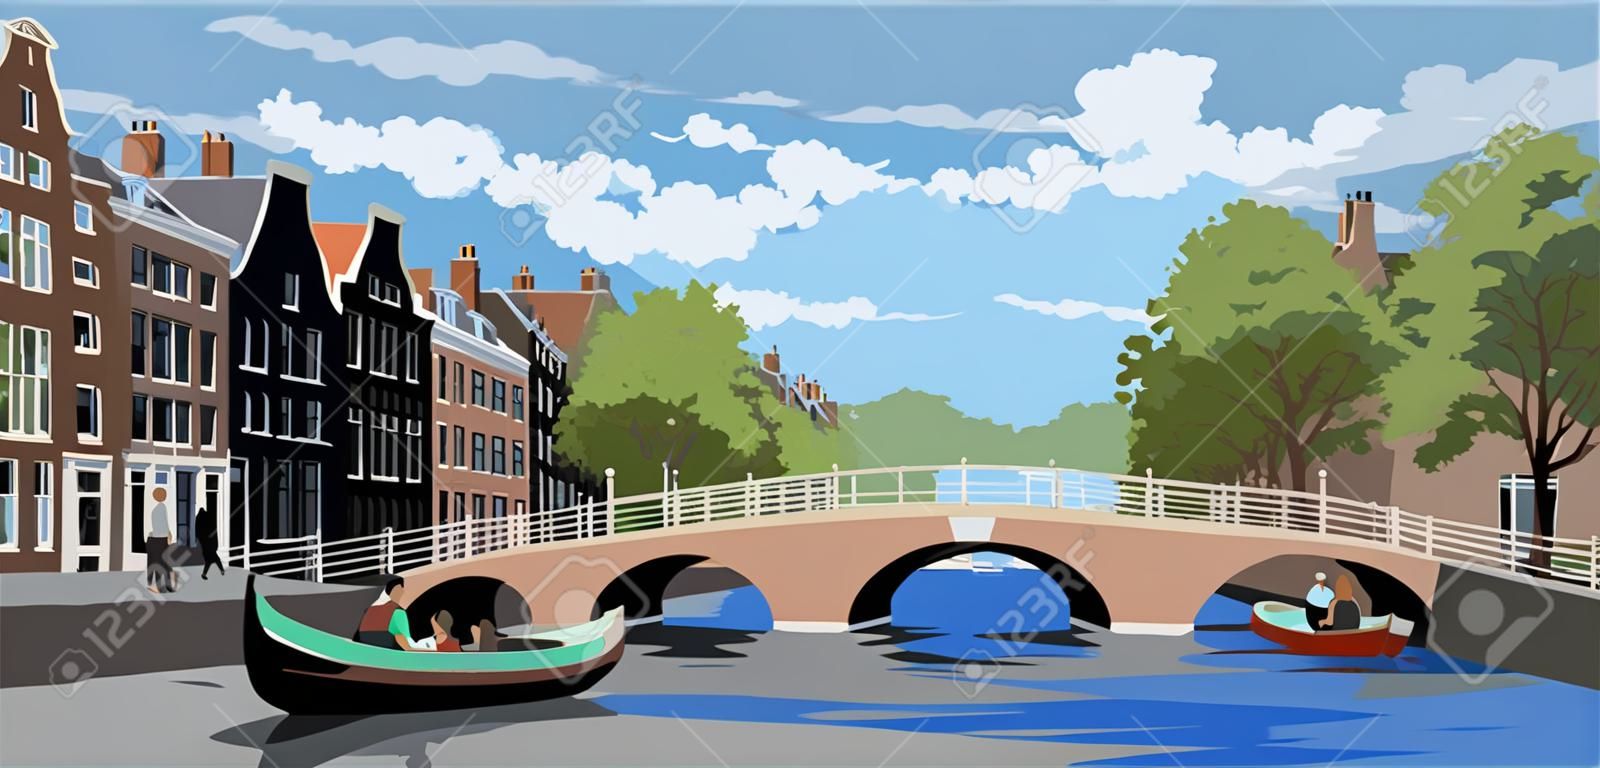 Paesaggio urbano con ponte sui canali di Amsterdam, Paesi Bassi. Punto di riferimento dei Paesi Bassi. Illustrazione vettoriale colorata.